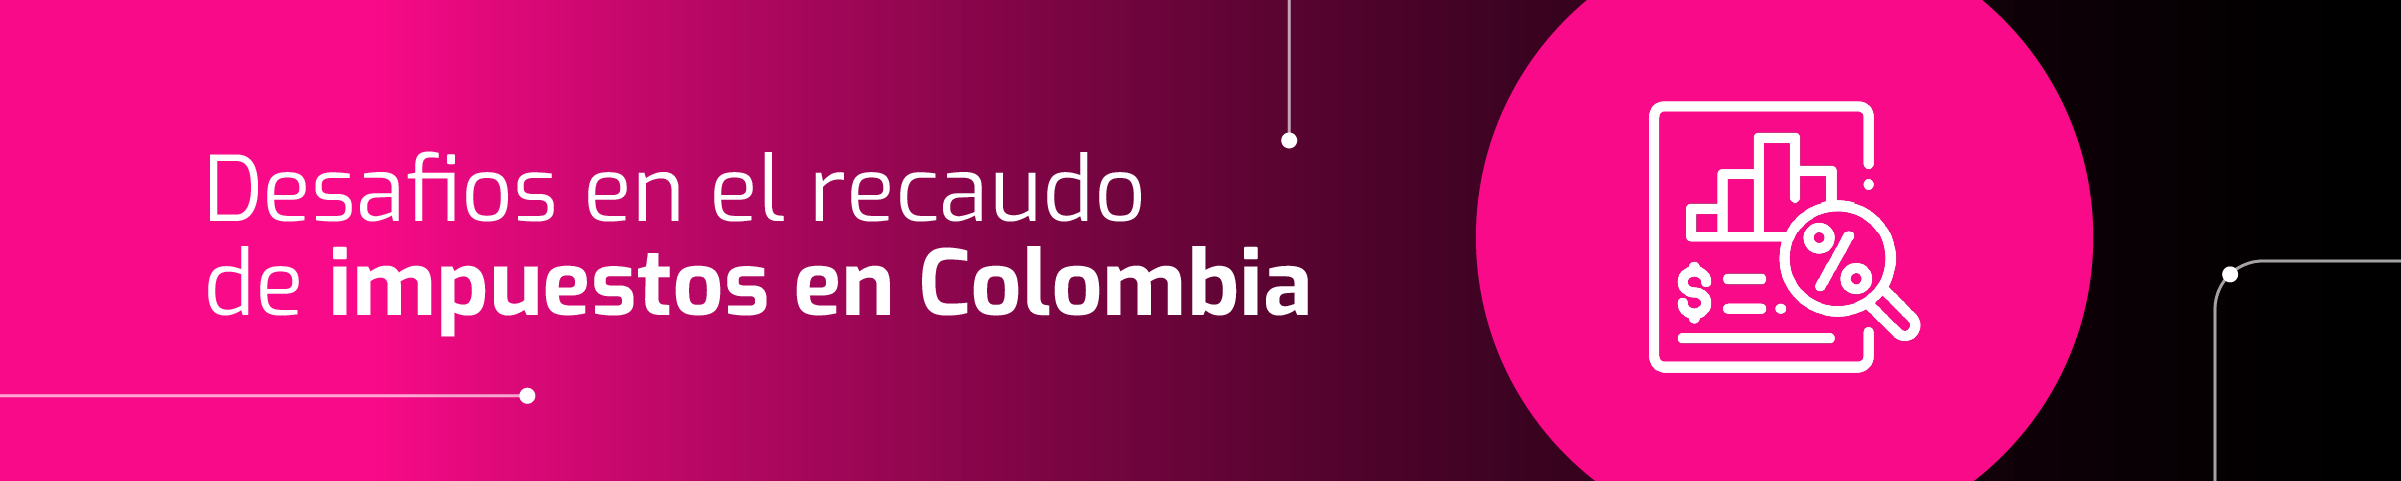 Pancarta gráfica con texto que dice "Desafíos fiscales en la recaudación de impuestos en Colombia" y un ícono de una caja registradora, sobre un fondo rosa y morado.